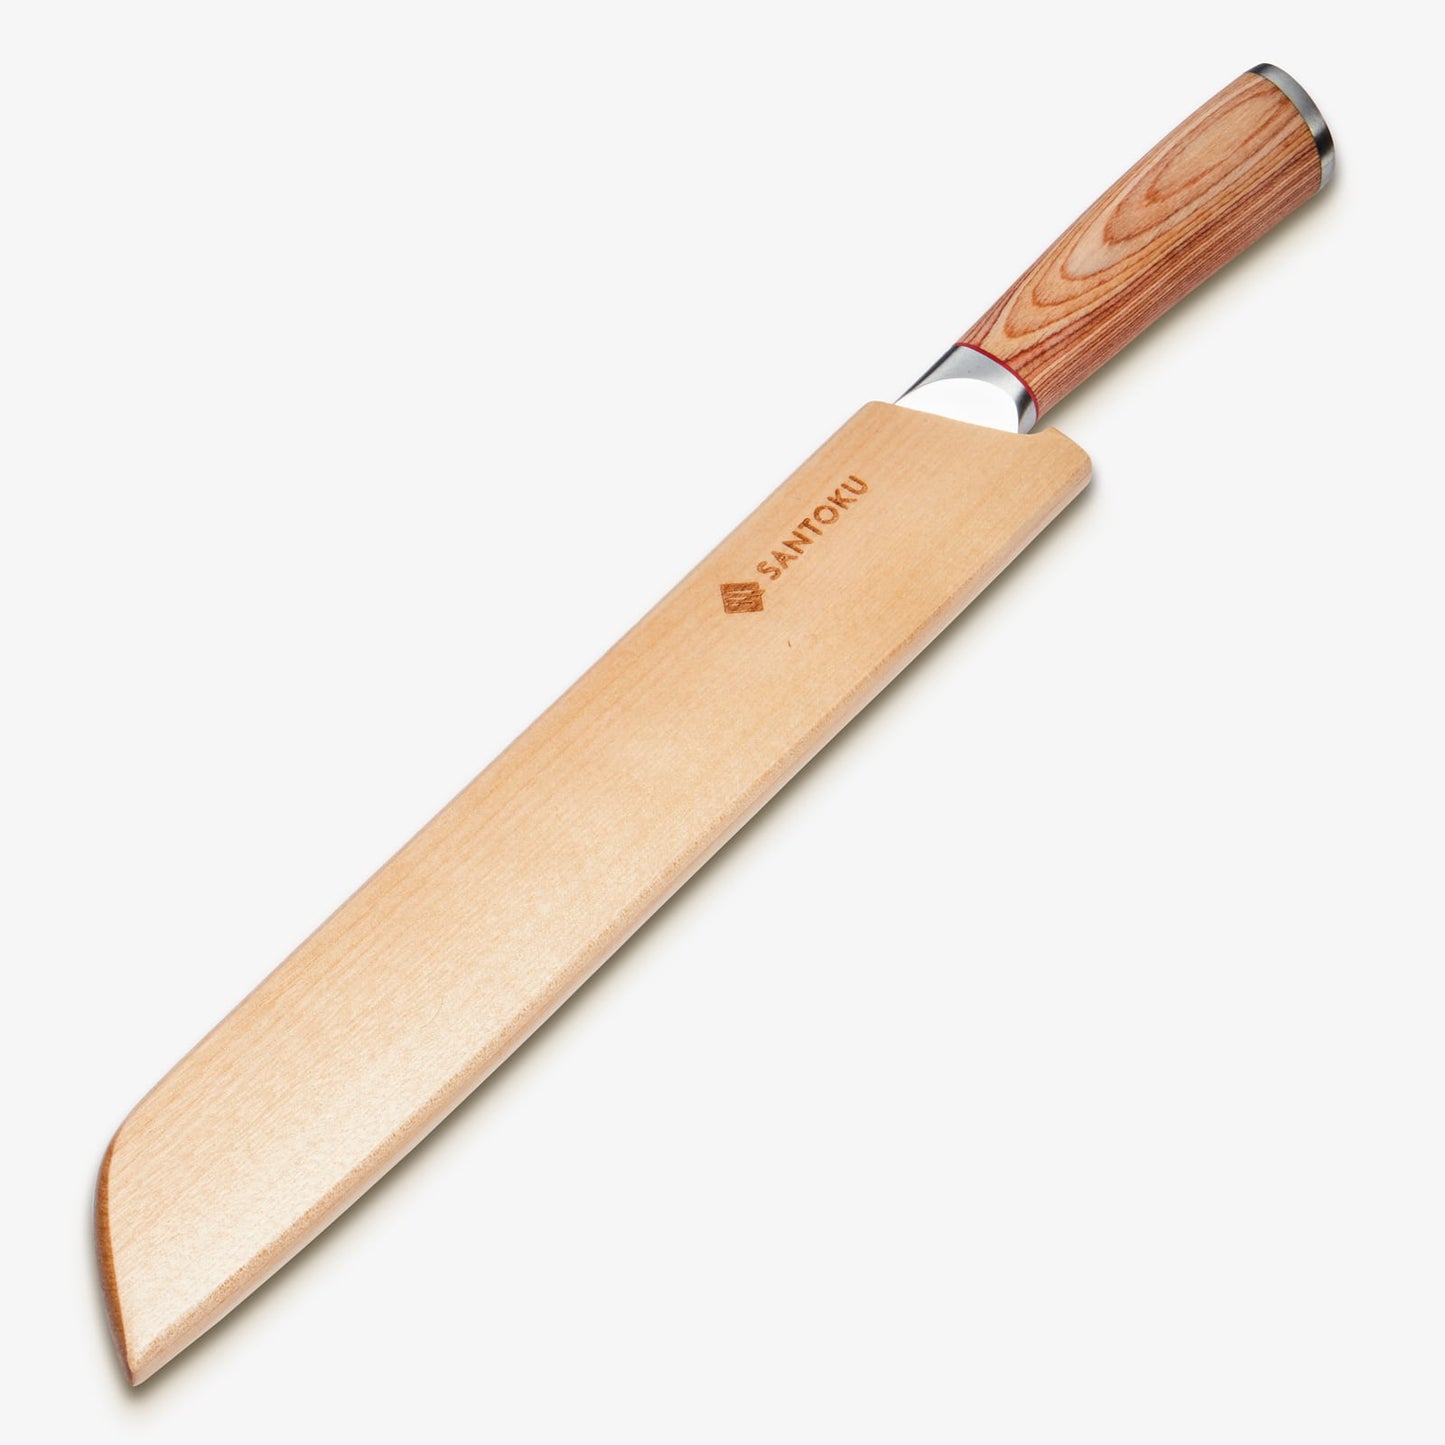 هاروتا (はるた) سكين خبز 10 بوصة